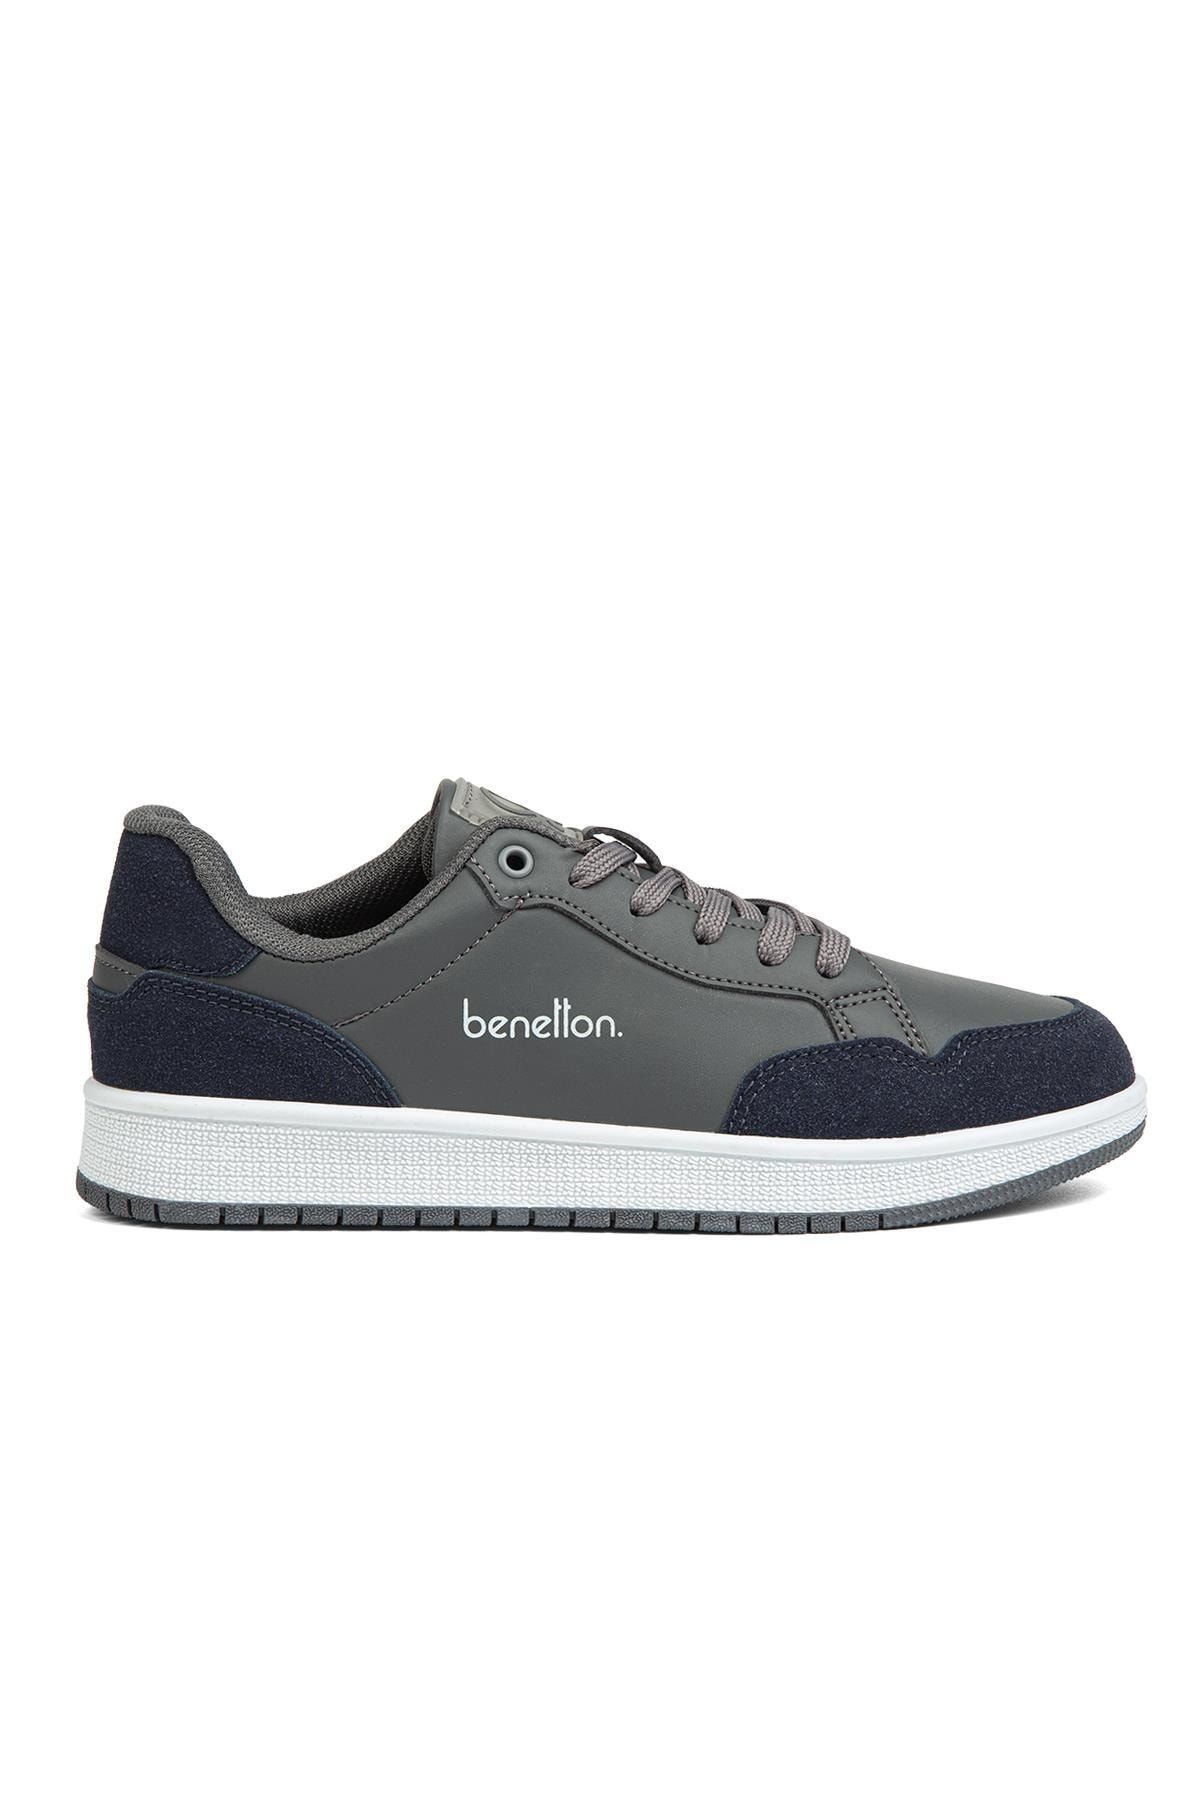 Benetton ® | Bn-30870 - 3471 Fume - Kadın Spor Ayakkabı